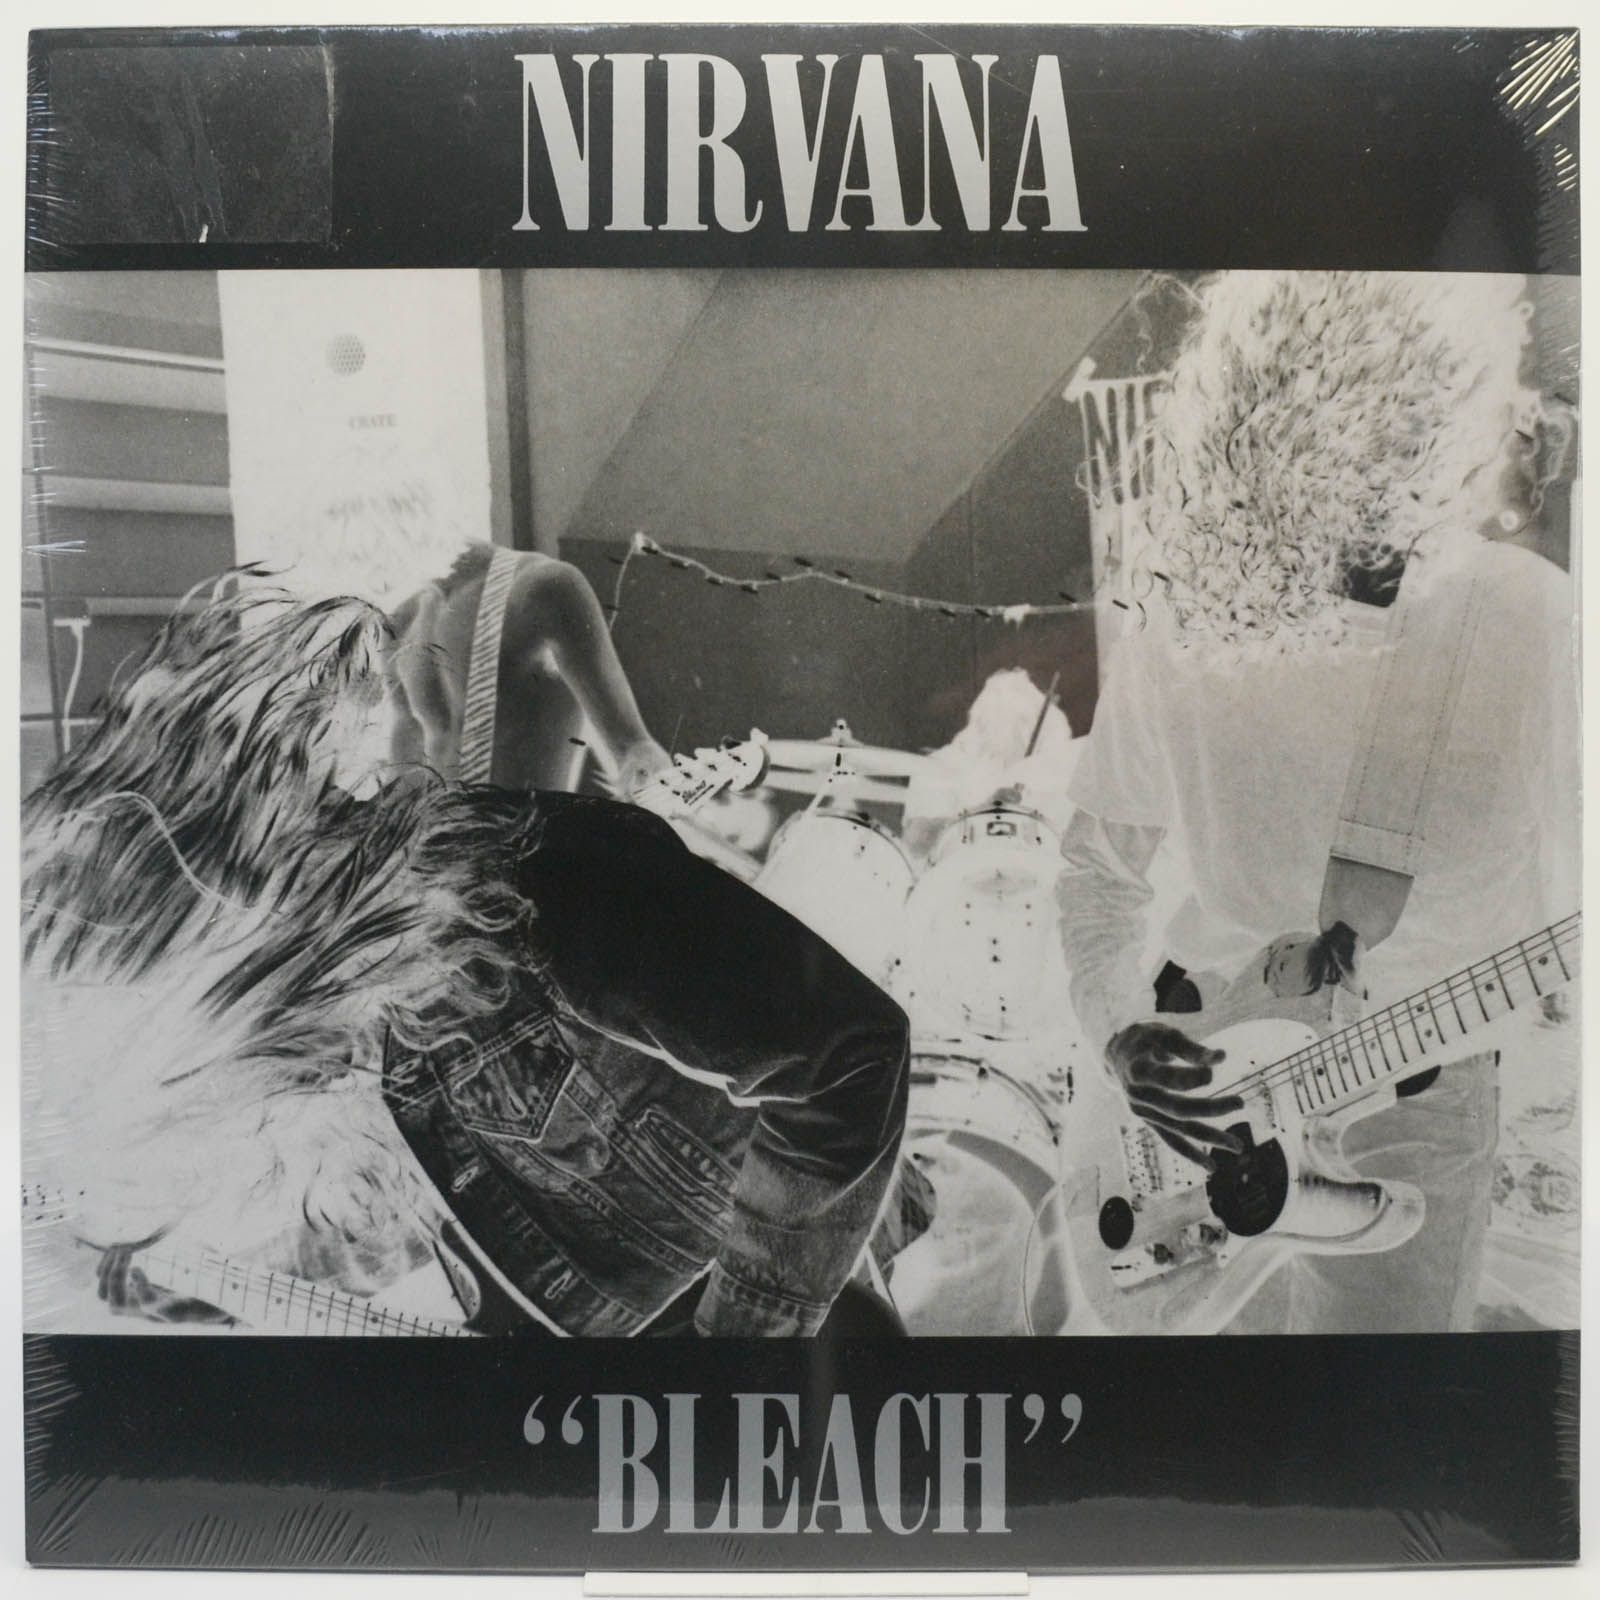 Nirvana — Bleach, 1989